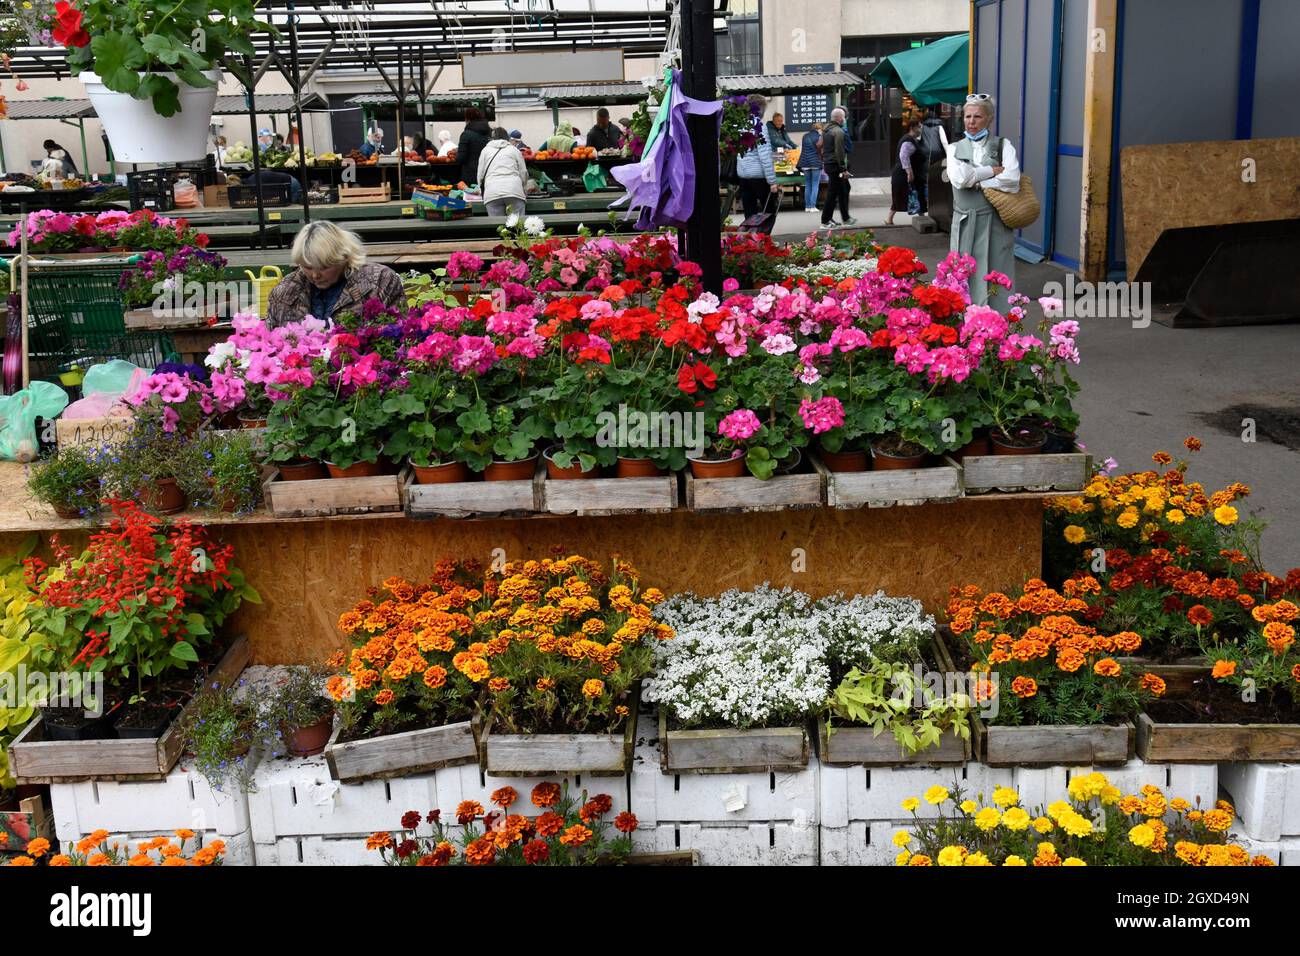 Vendedor de flores en el mercado central de Riga, Letonia. Foto de stock